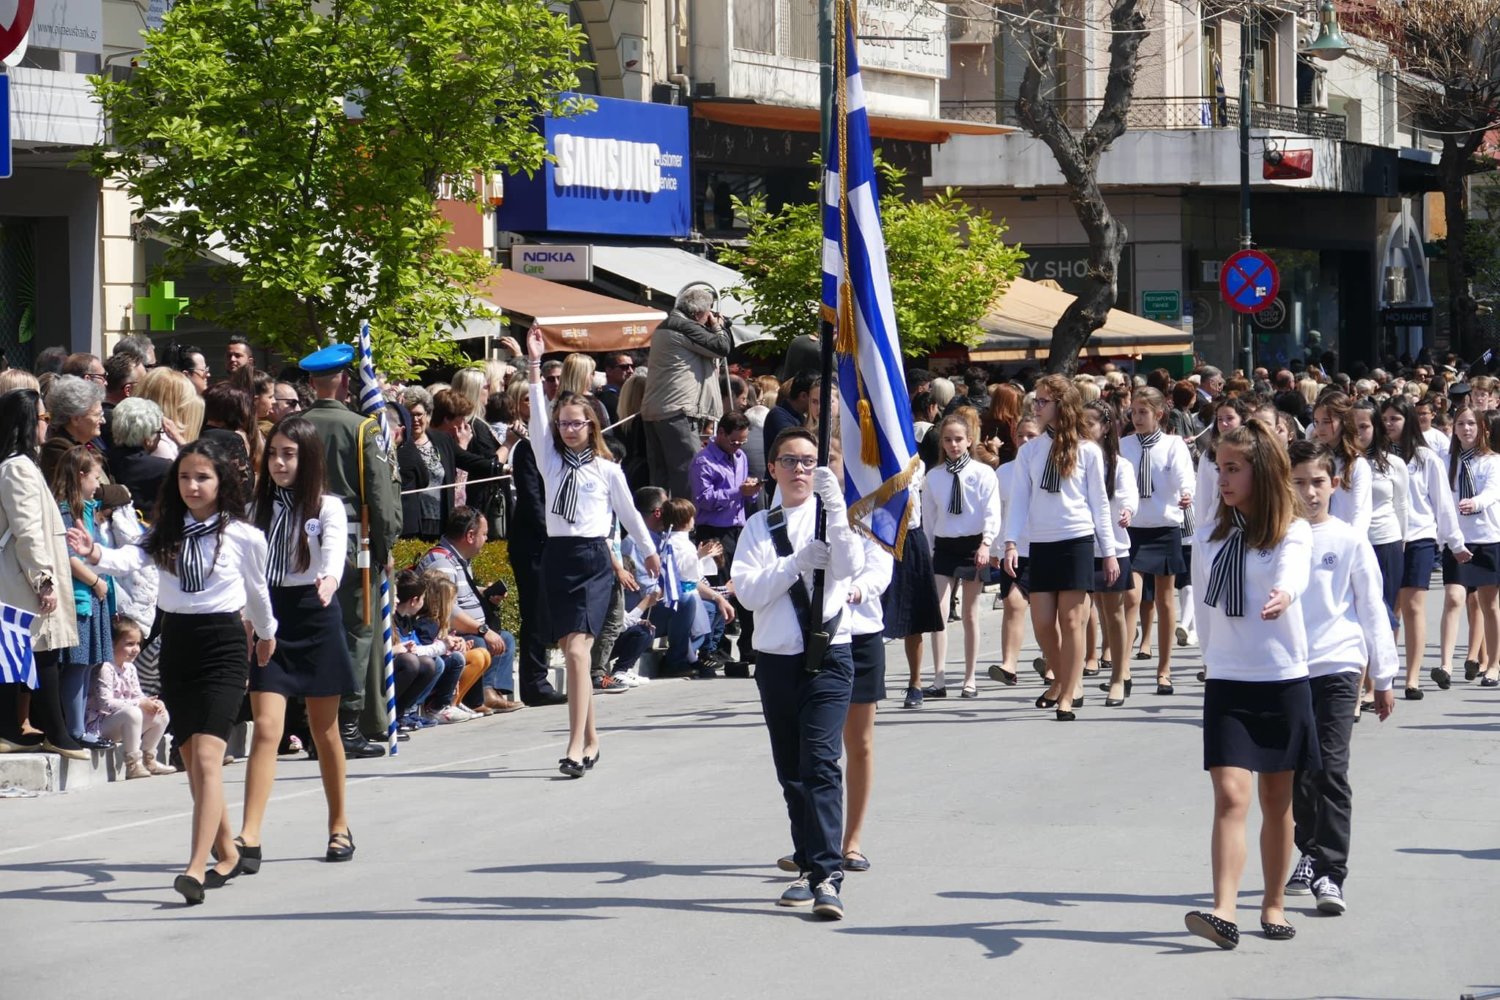 Μαθητική παρέλαση 28ης Οκτωβρίου: Καταργείται η κλήρωση στους σημαιοφόρους-Επανέρχεται το κριτήριο επίδοσης μαθητή